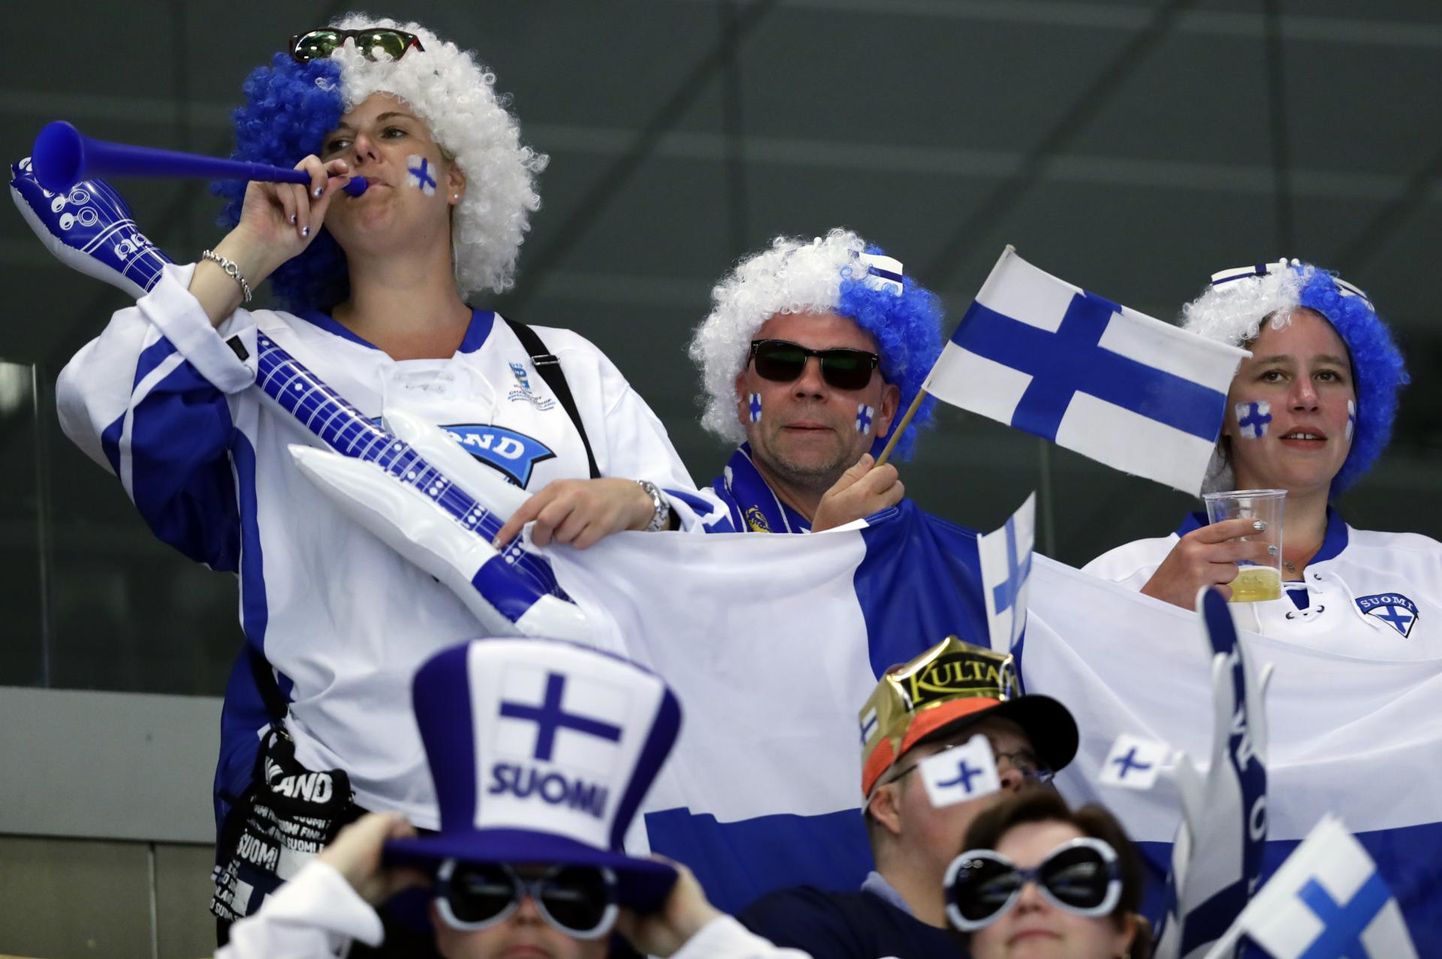 Soome jäähokikoondist toetab suur hulk fänne igas Euroopa otsas. Finaalturniiridel on suurt fänniarmeed nautinud ka põhjanaabride korv- ja võrkpallimeeskonnad. Täna ootab Lillekülas rekordiline võõrsil-publik Soome jalgpallikoondist.